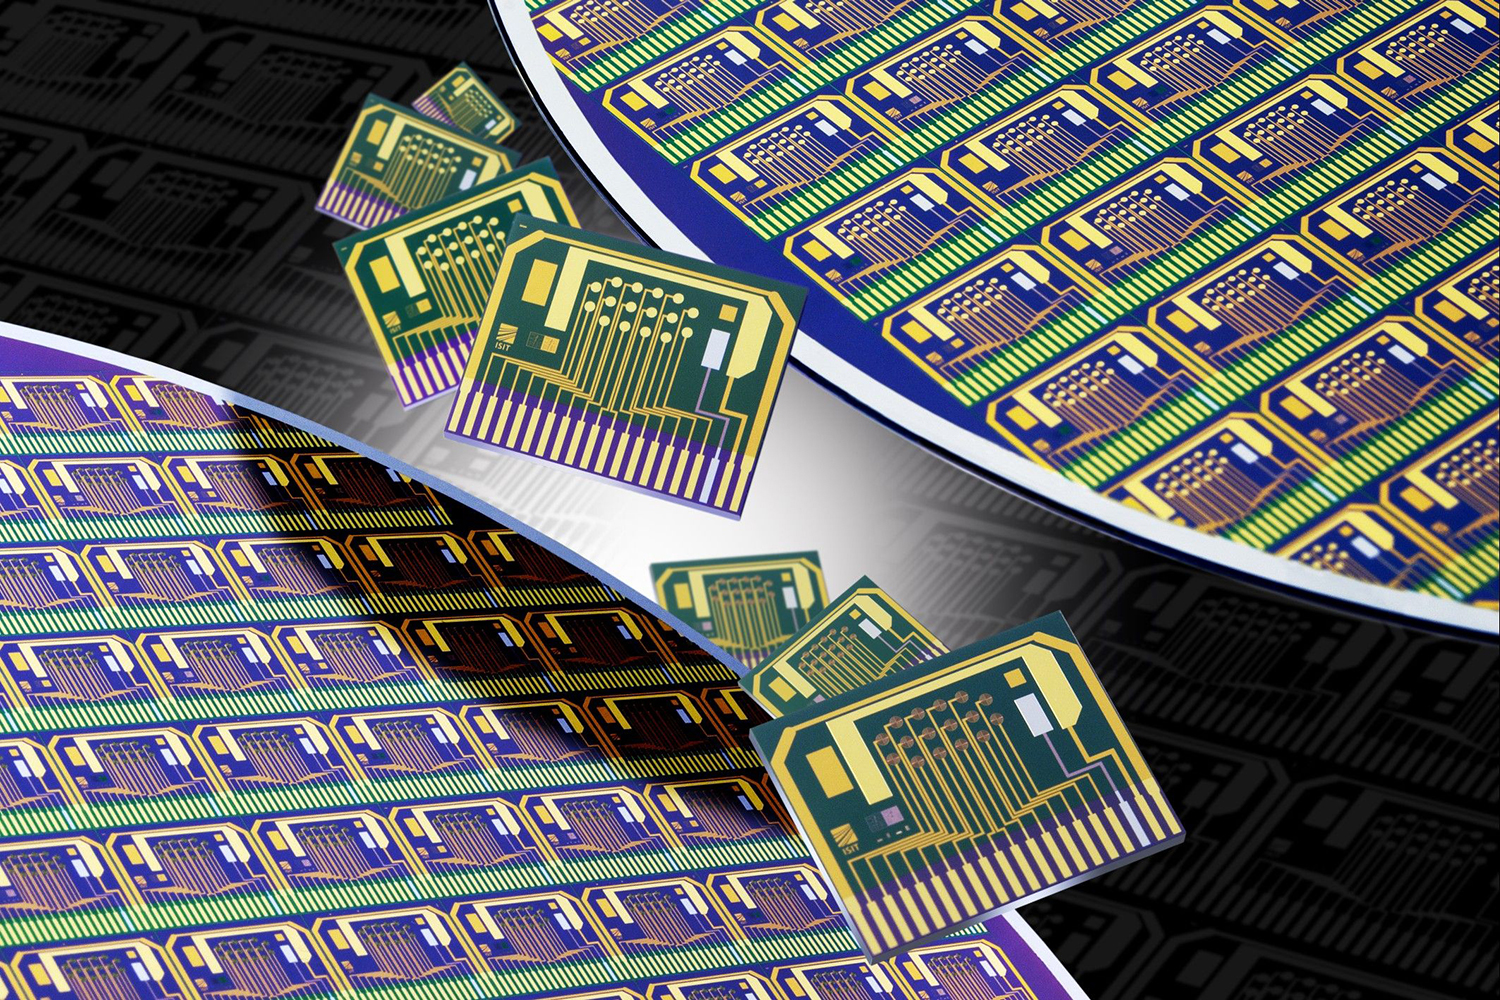 Lab-on-a-Chip – die bahnbrechende Innovation misst biologische Prozesse direkt auf dem Chip.